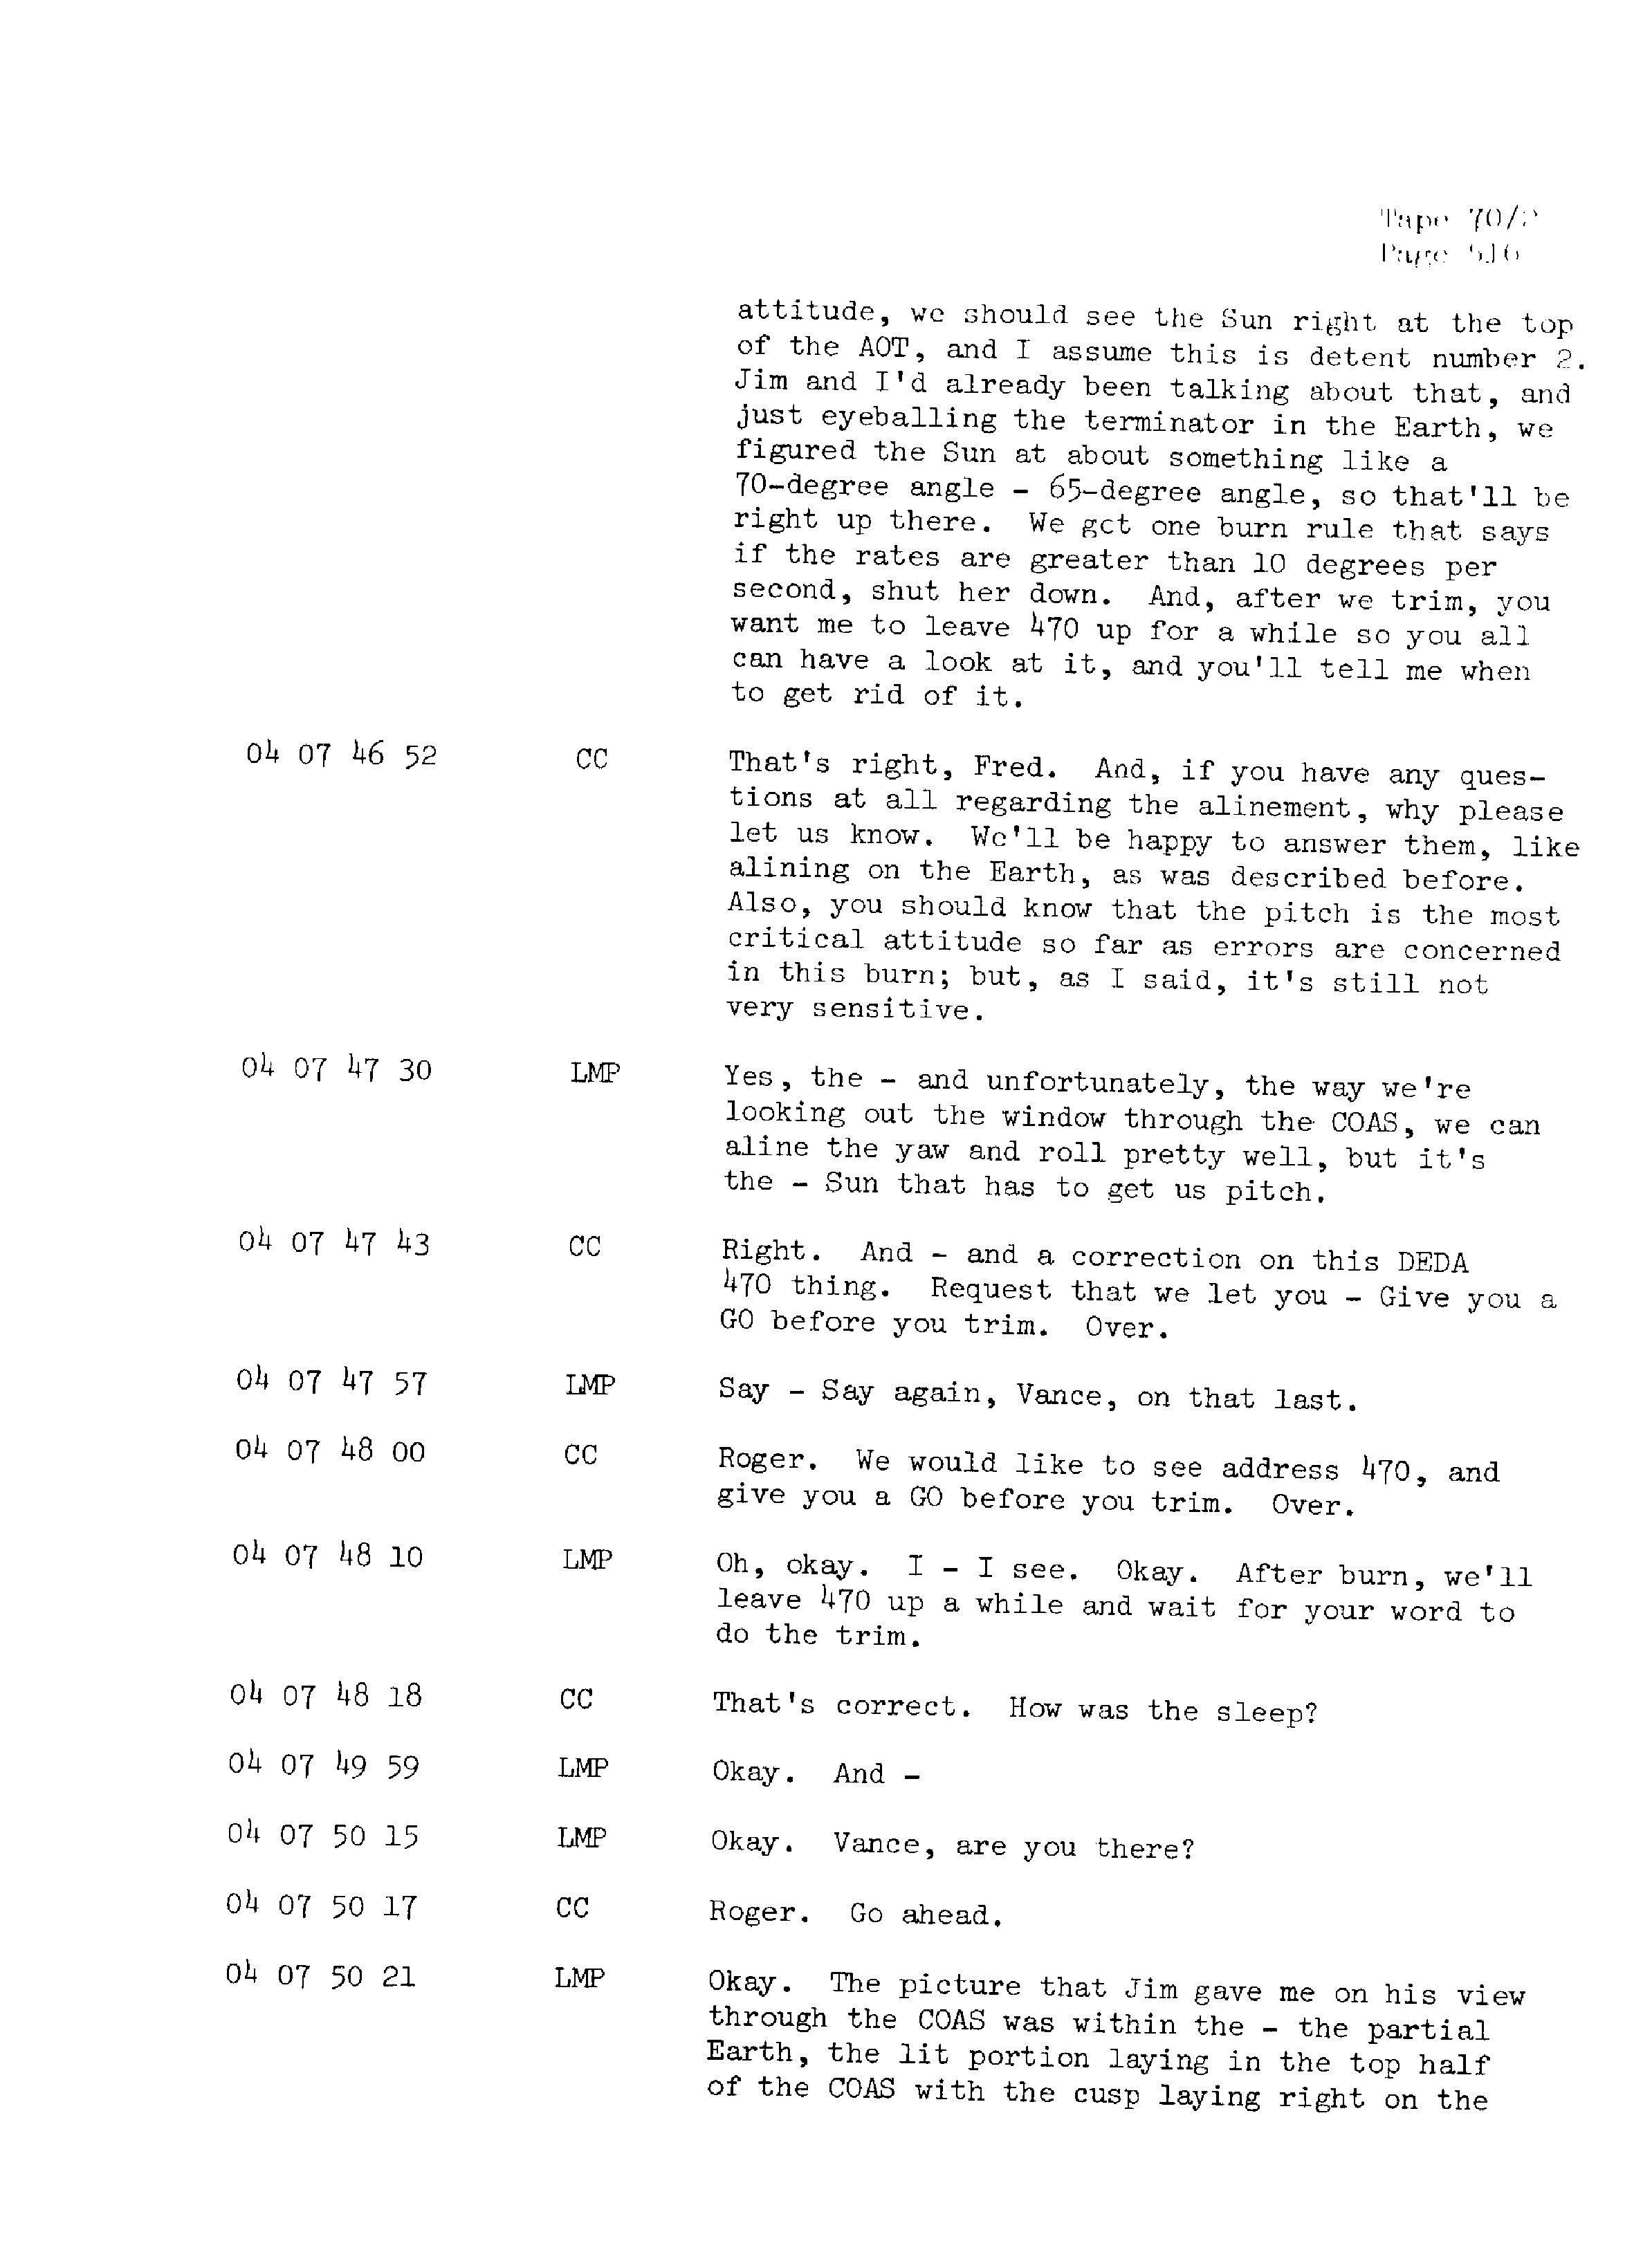 Page 523 of Apollo 13’s original transcript